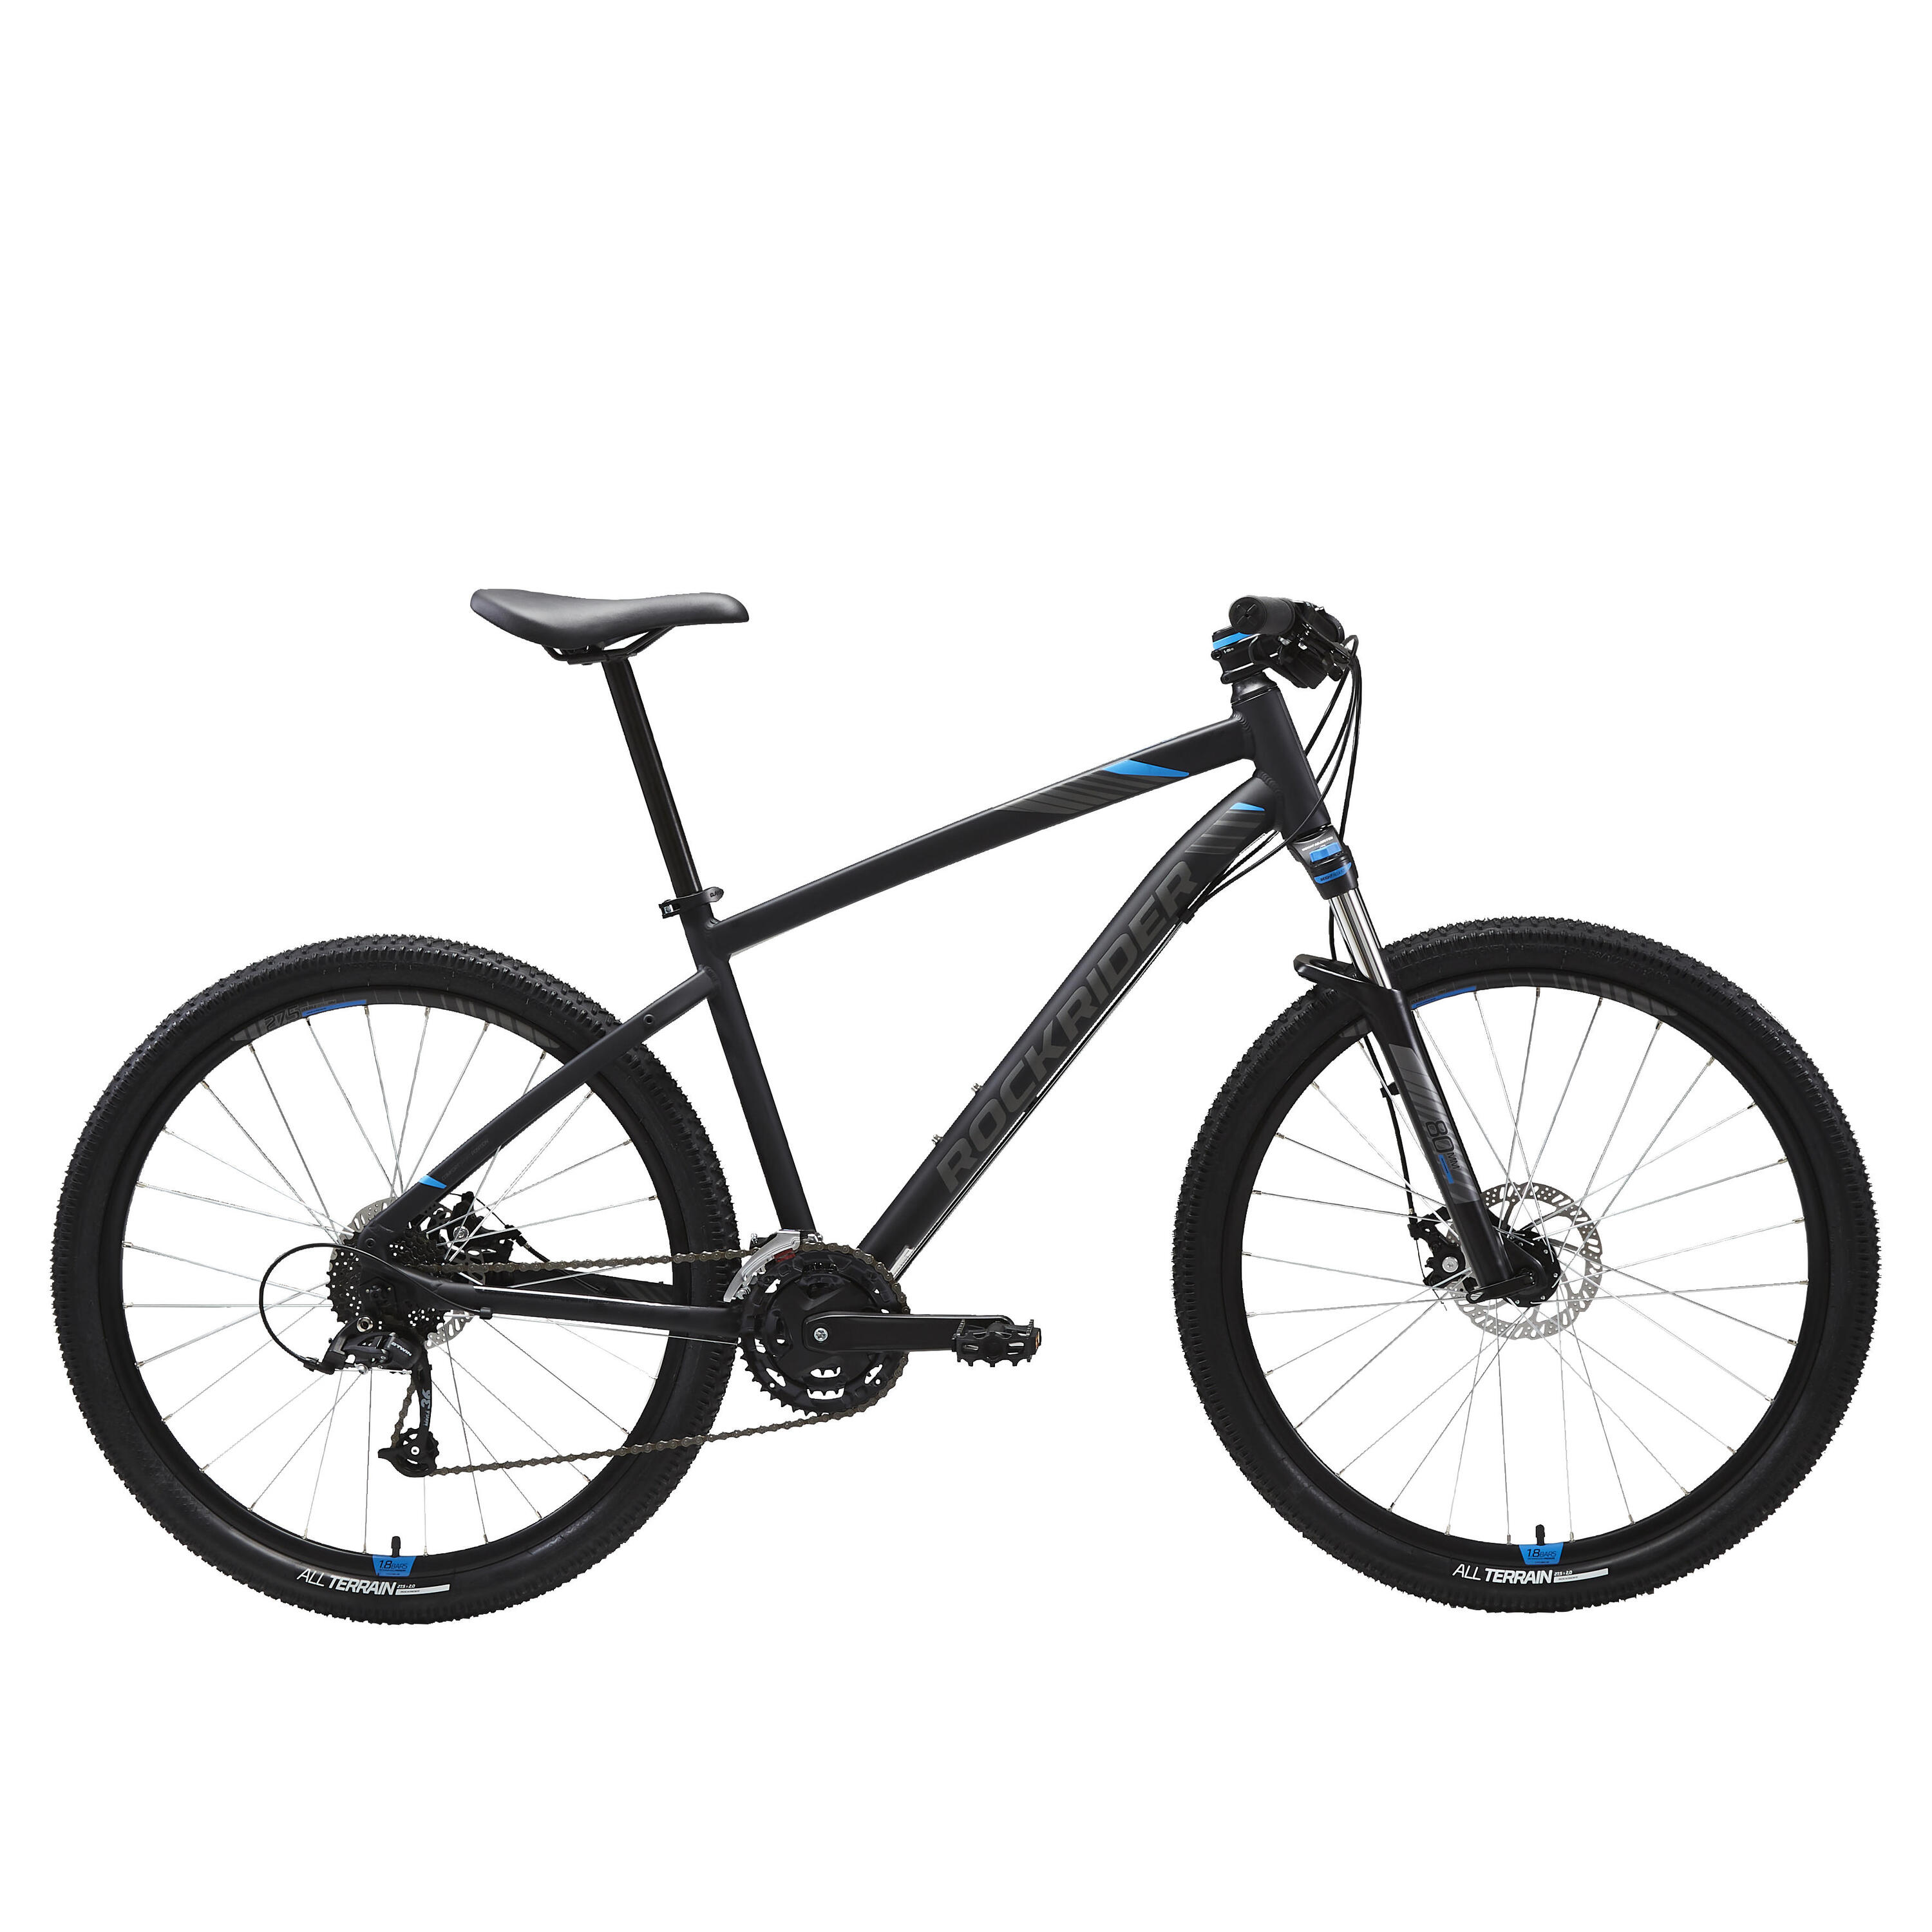 27.5 Inch Mountain bike Rockrider ST 520 - Black 1/13